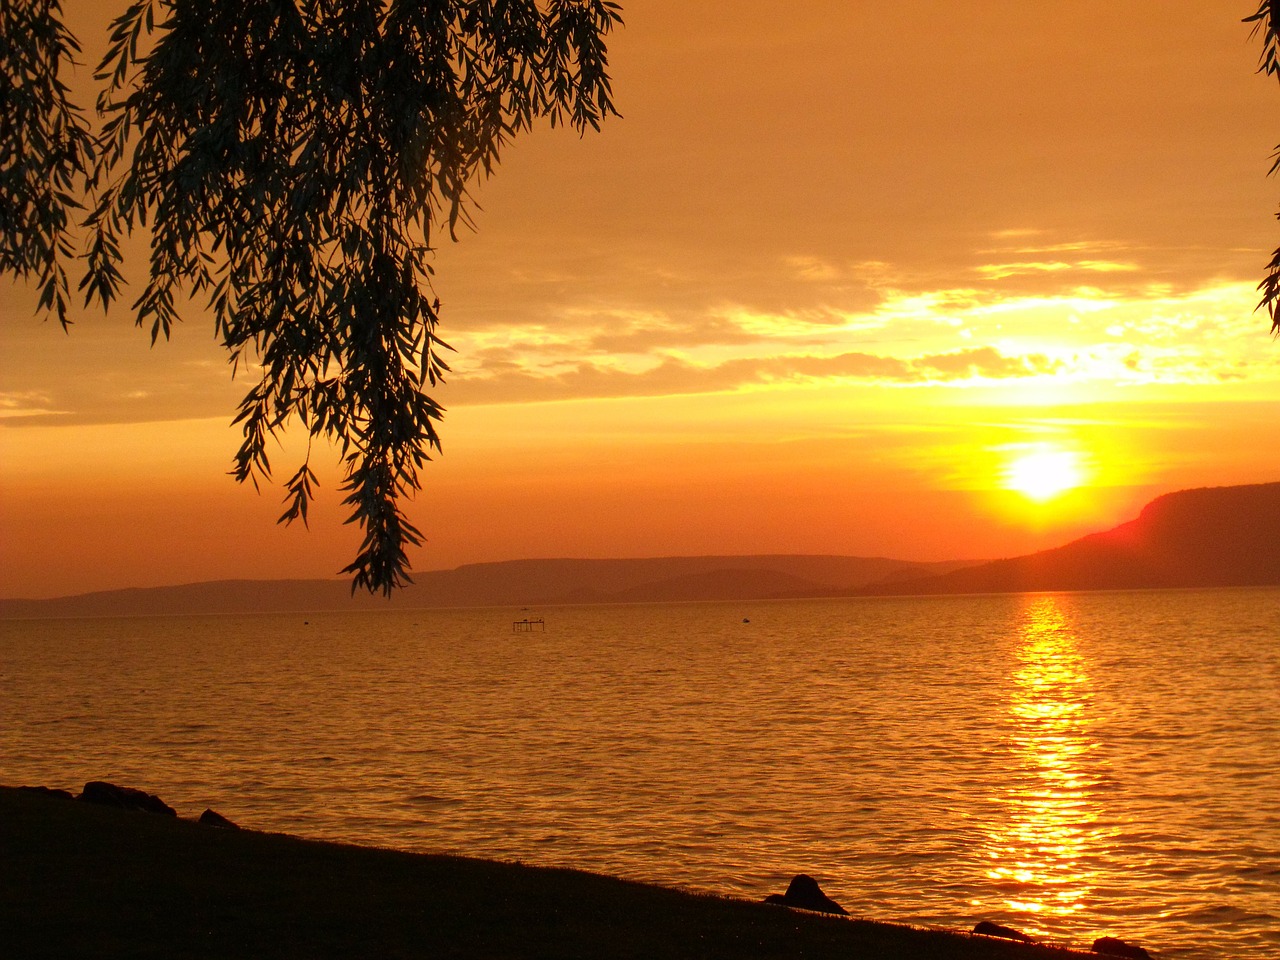 aranyhíd sunset lake balaton free photo